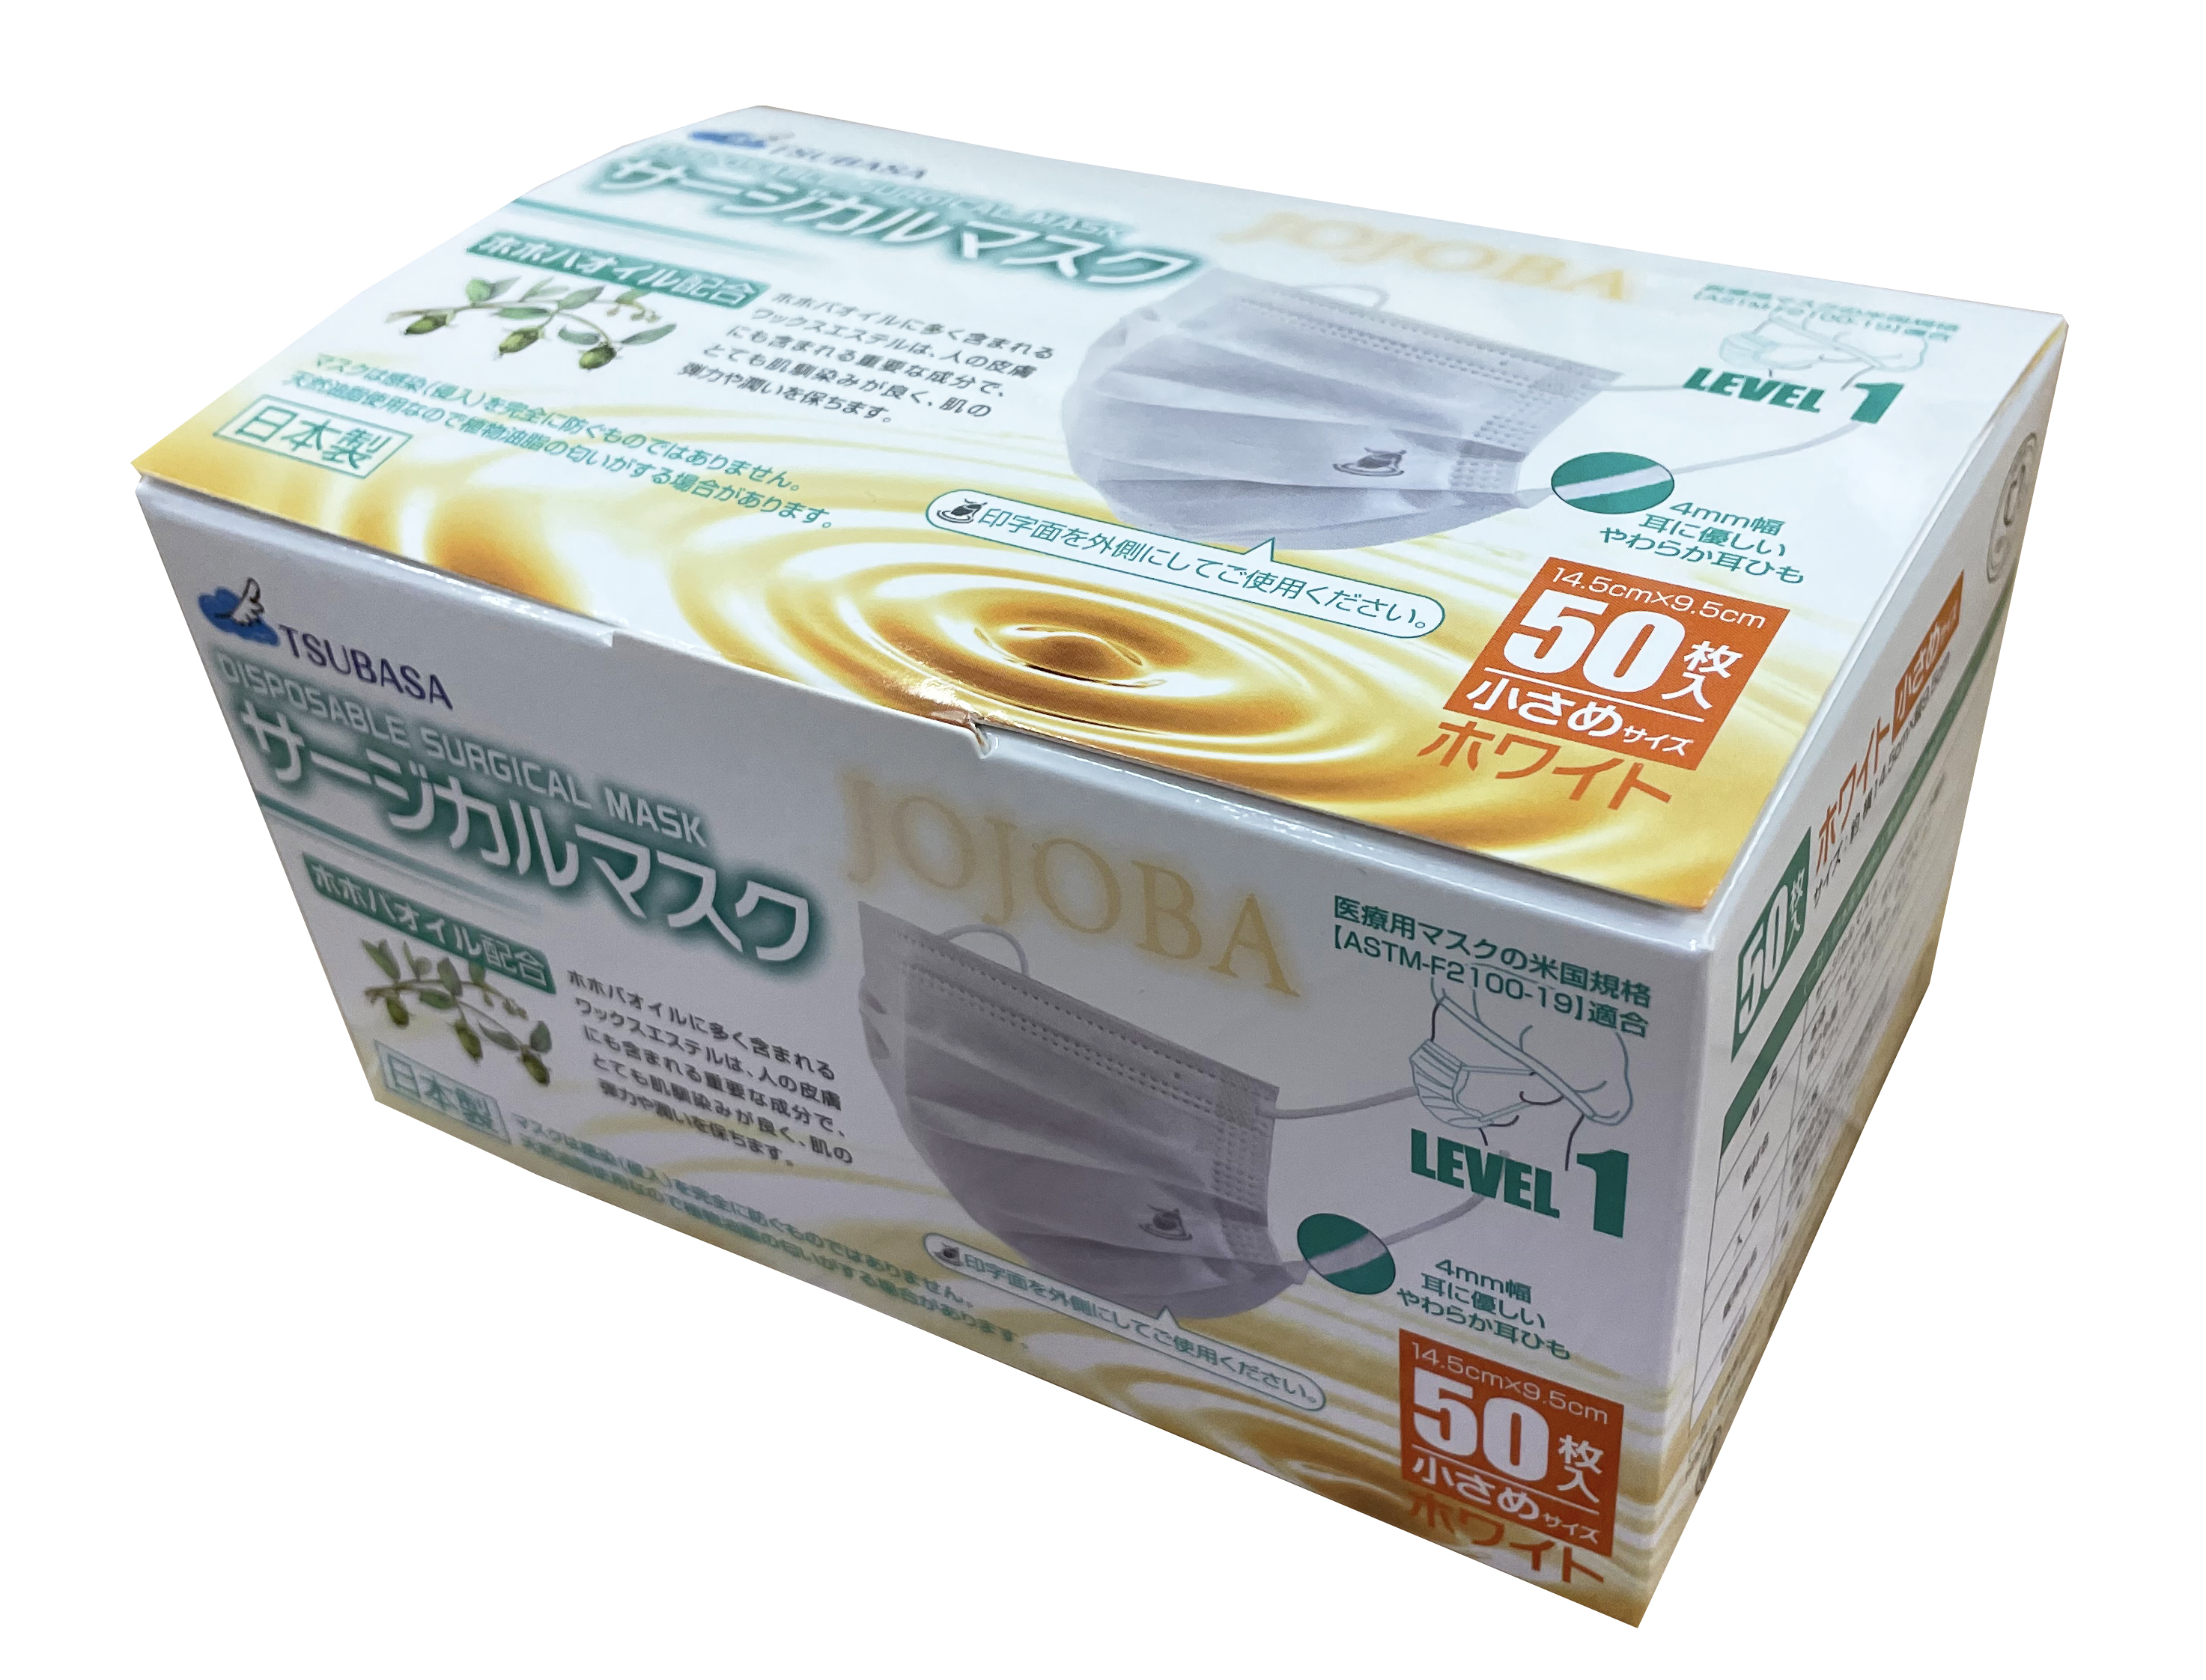 【日本製】3層式 TSUBASA 国産 医療用 ホホバオイル サージカルマスク レベル1 ホワイト/スモールサイズ 1BOX-50枚袋入り